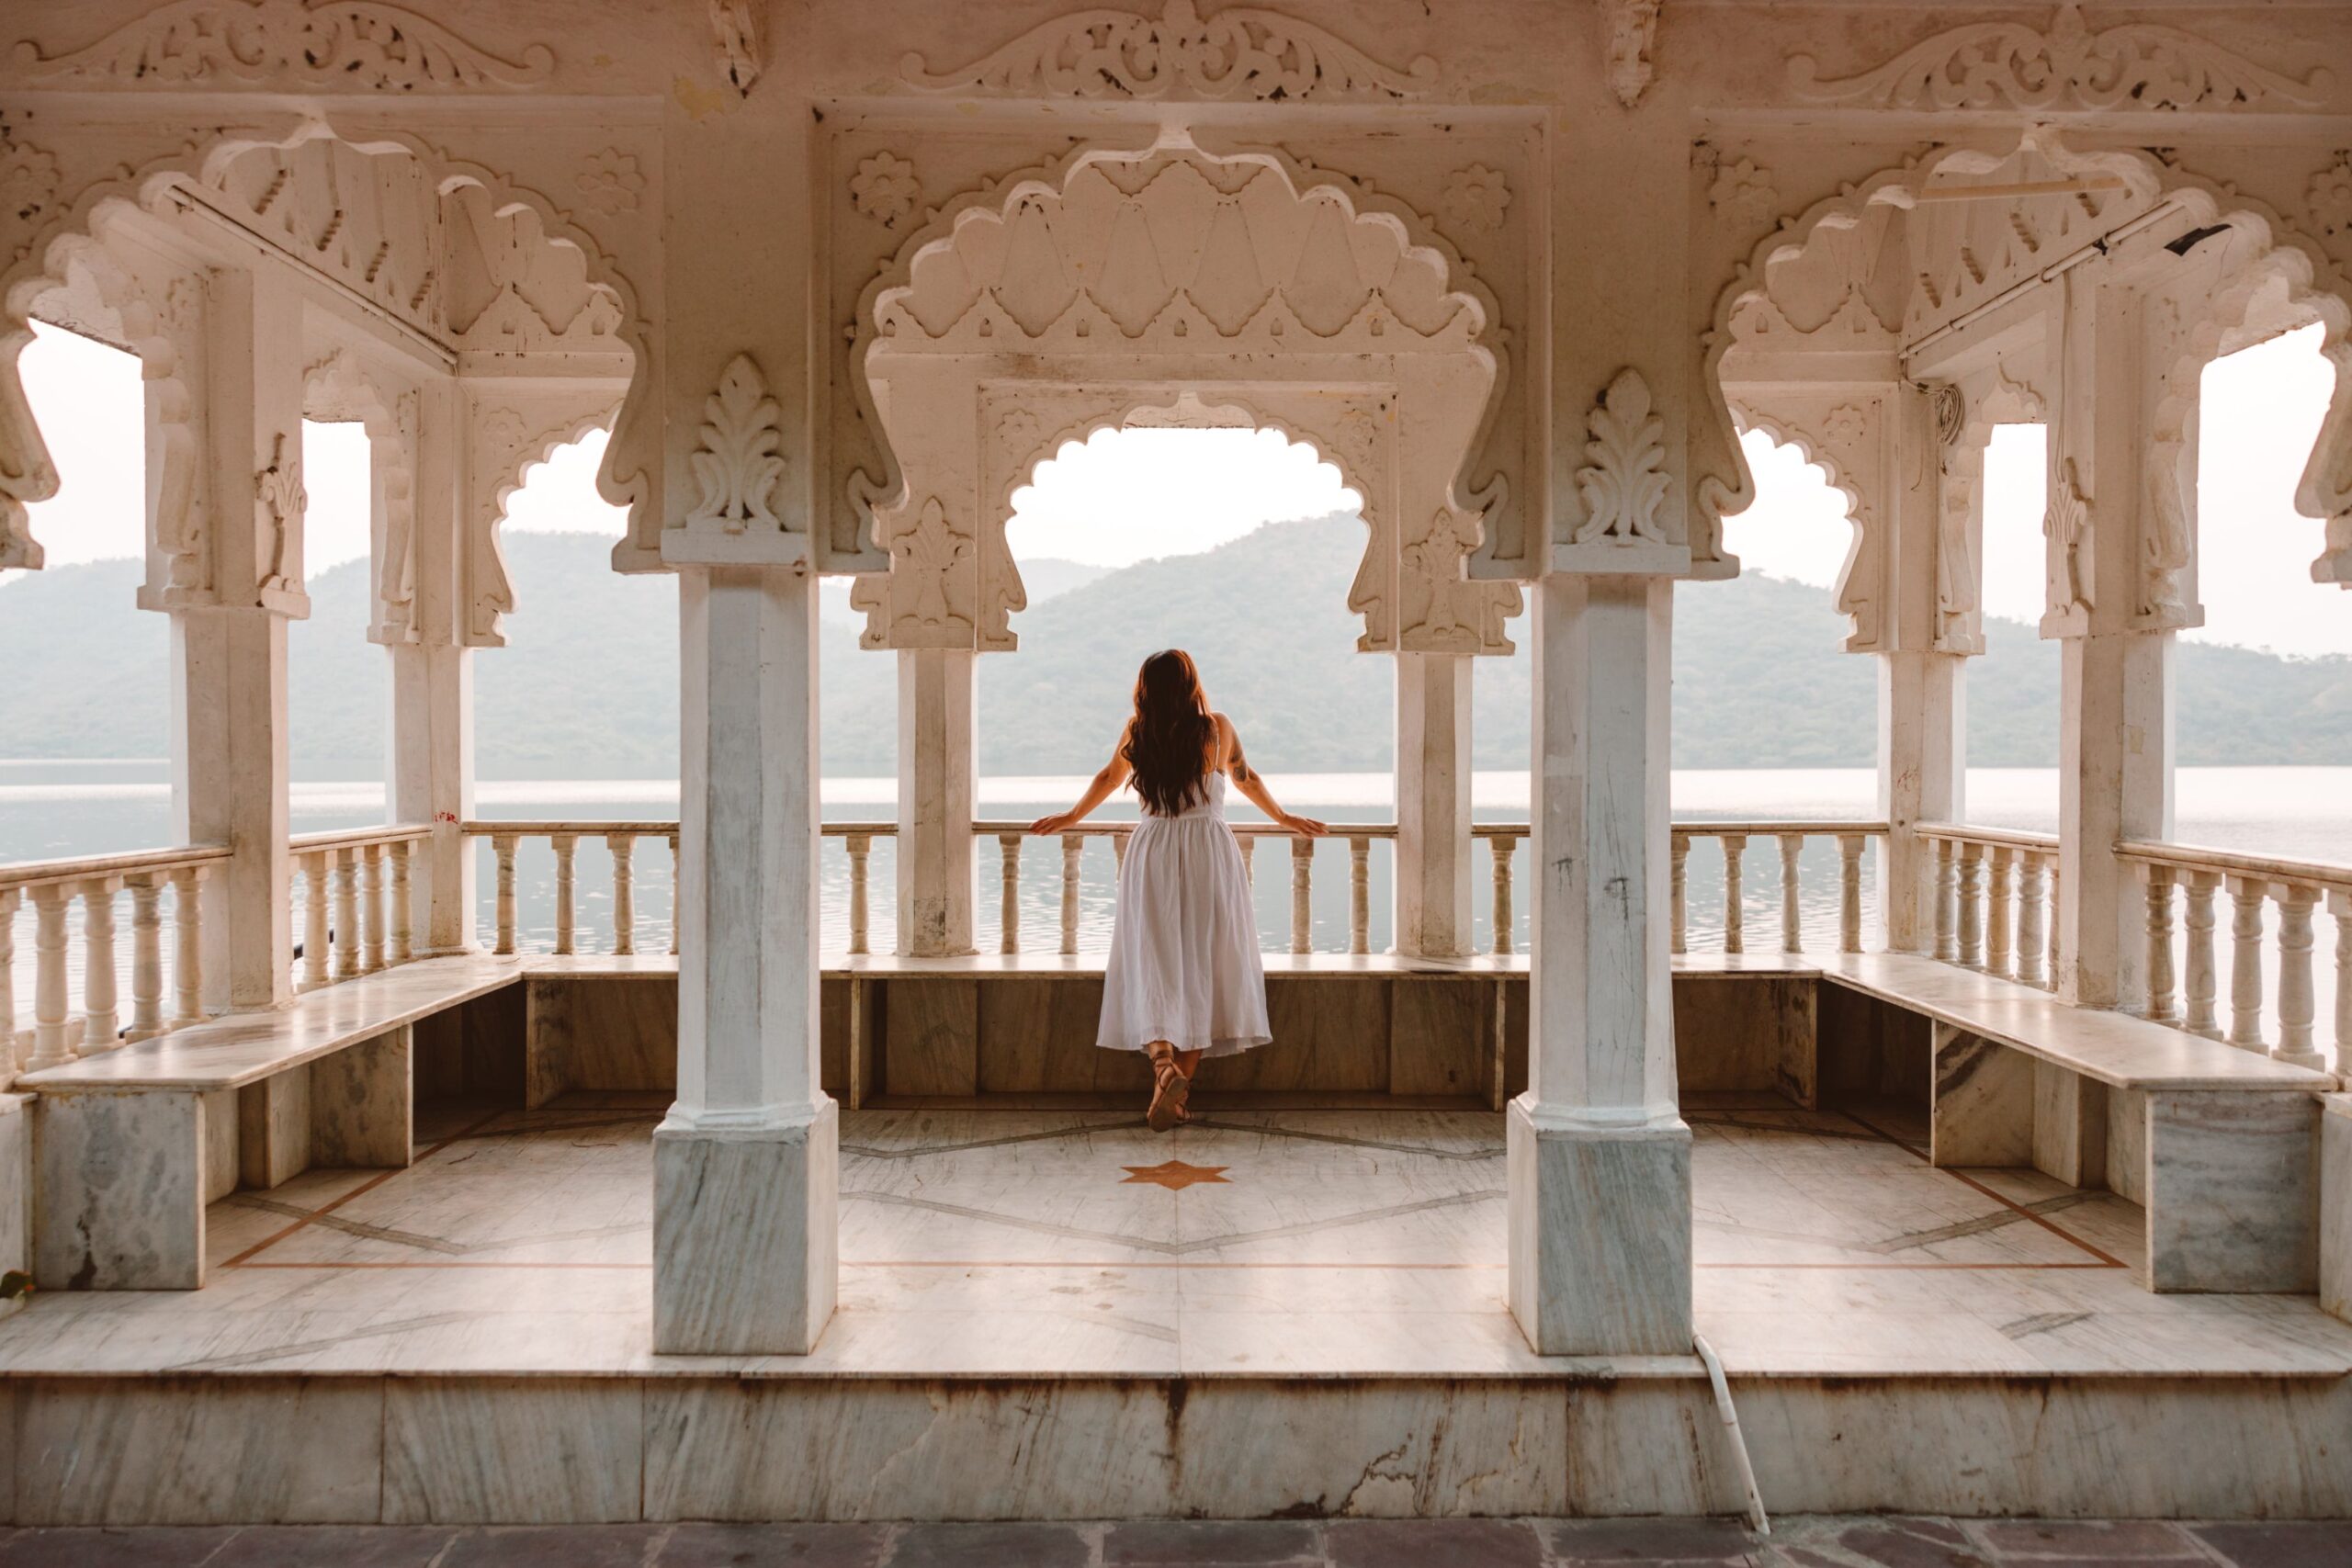 Must Visit Place in Udaipur: Lake Badi